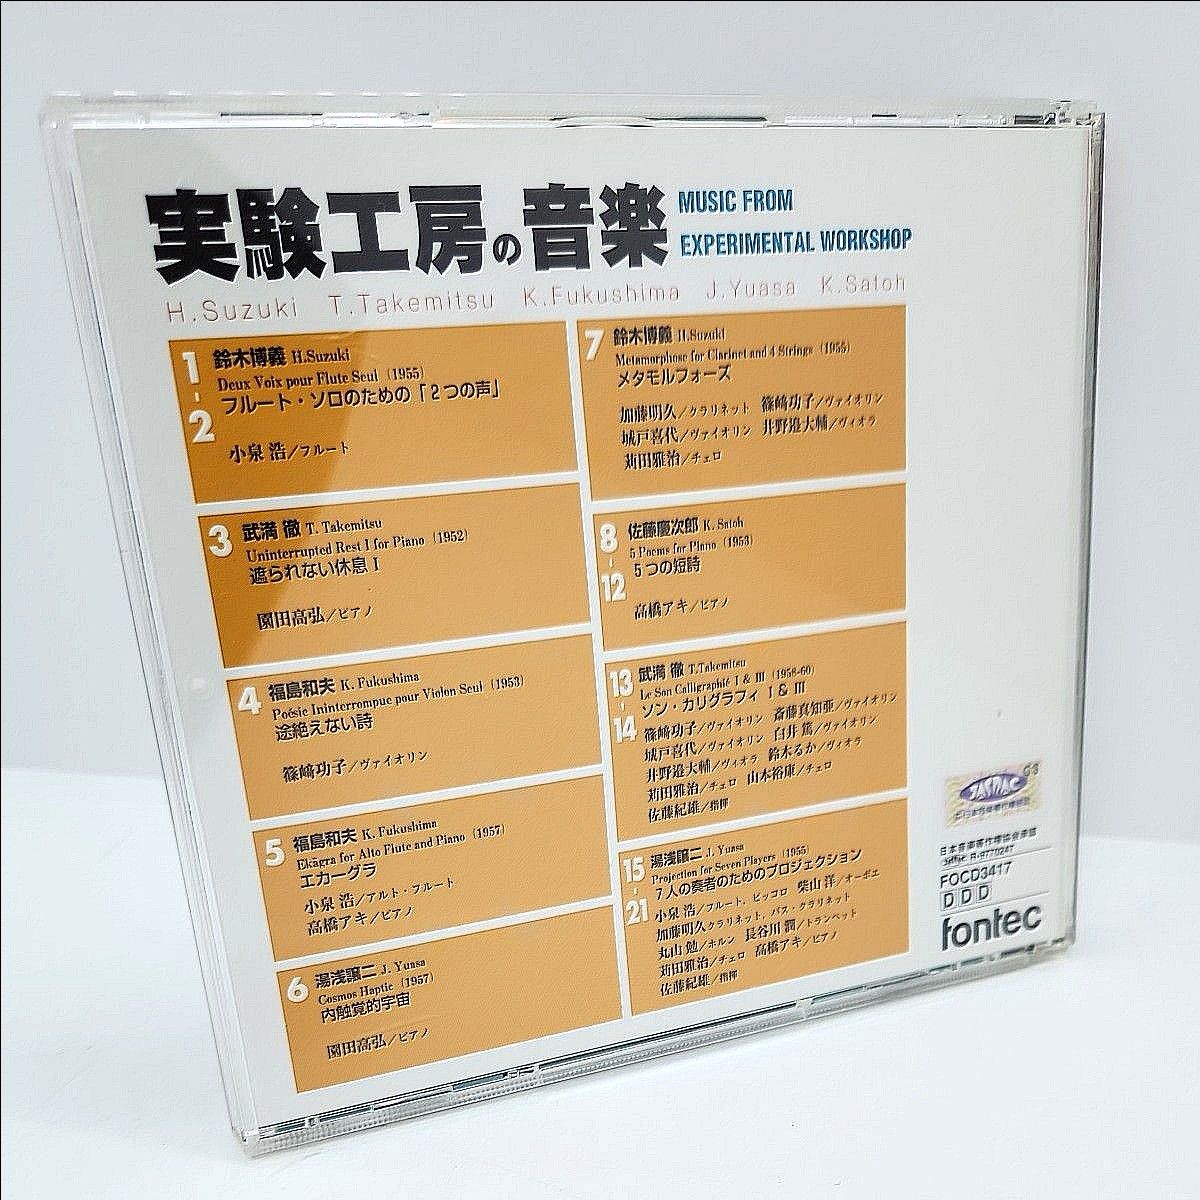 あ2) 実験工房の音楽 CD 鈴木博義 武満徹福島和夫 湯浅譲二 佐藤慶次郎